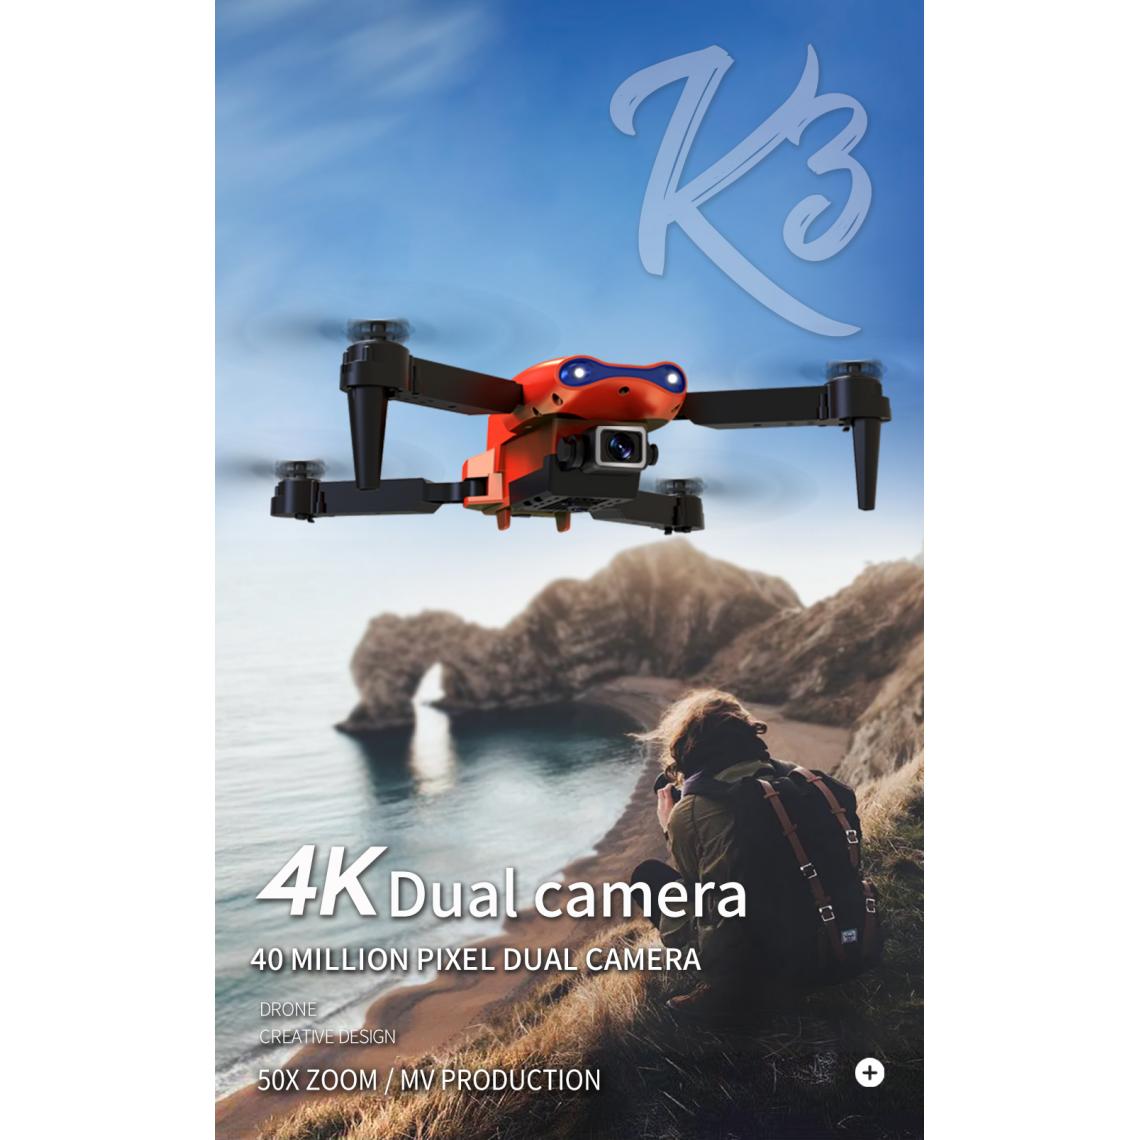 Universal - E99 Pro RC Drone 4K HD Double Caméra GPS WIFI FPV Pliable Retour automatique Drone aérien professionnel PK F11 Drone | RC Helicopter(Orange) - Drone